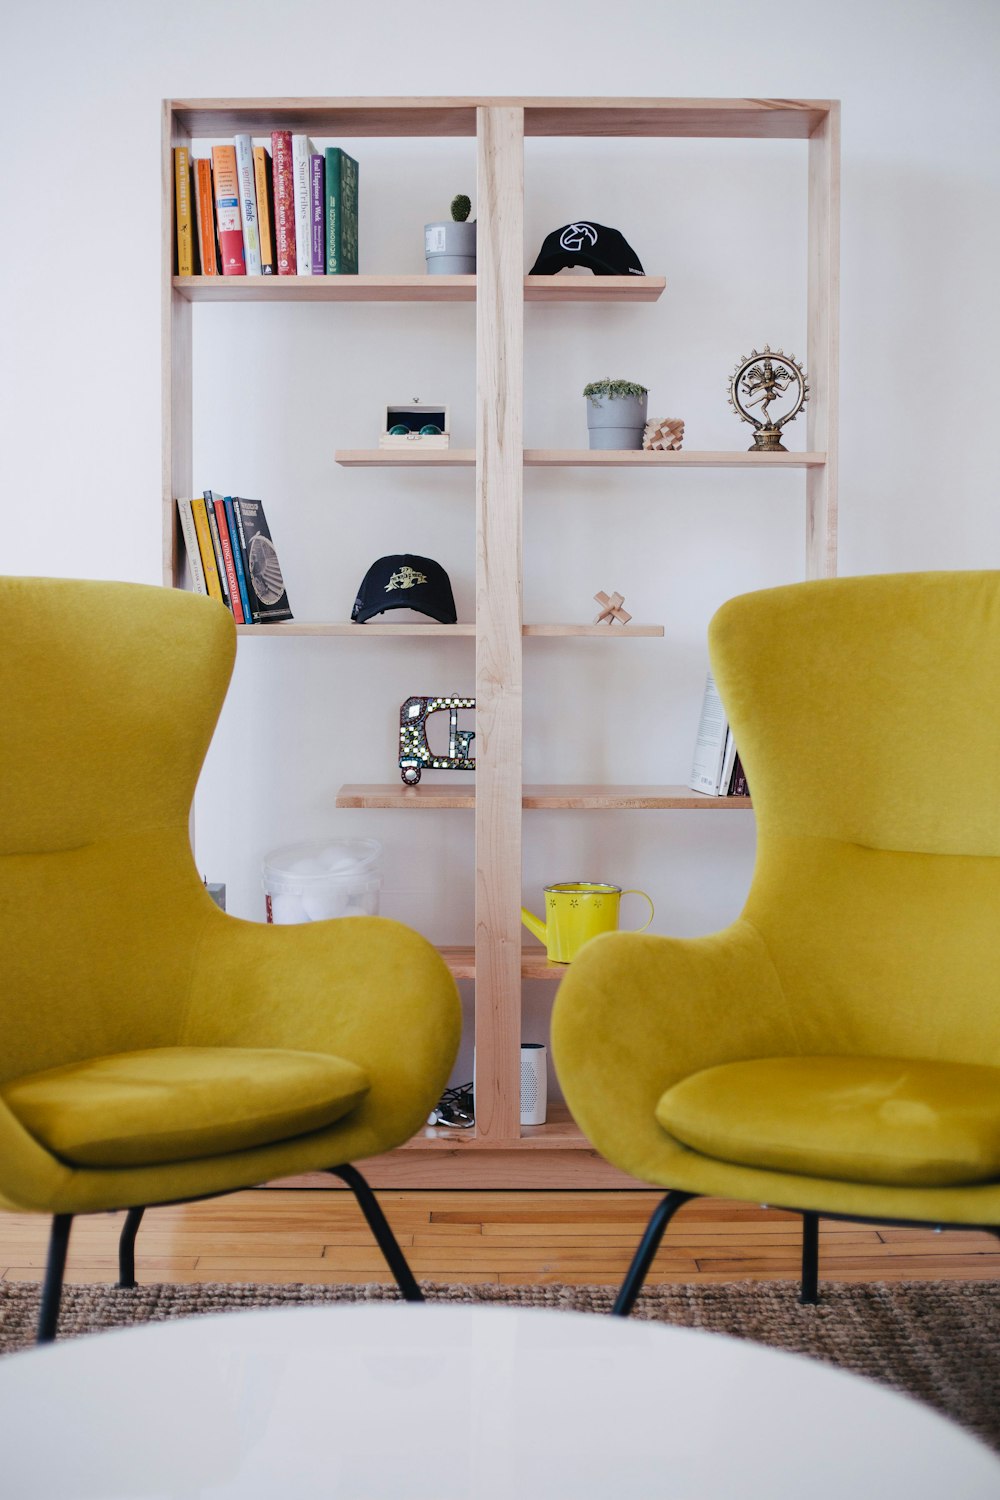 Dos sillas amarillas cerca de la estantería marrón